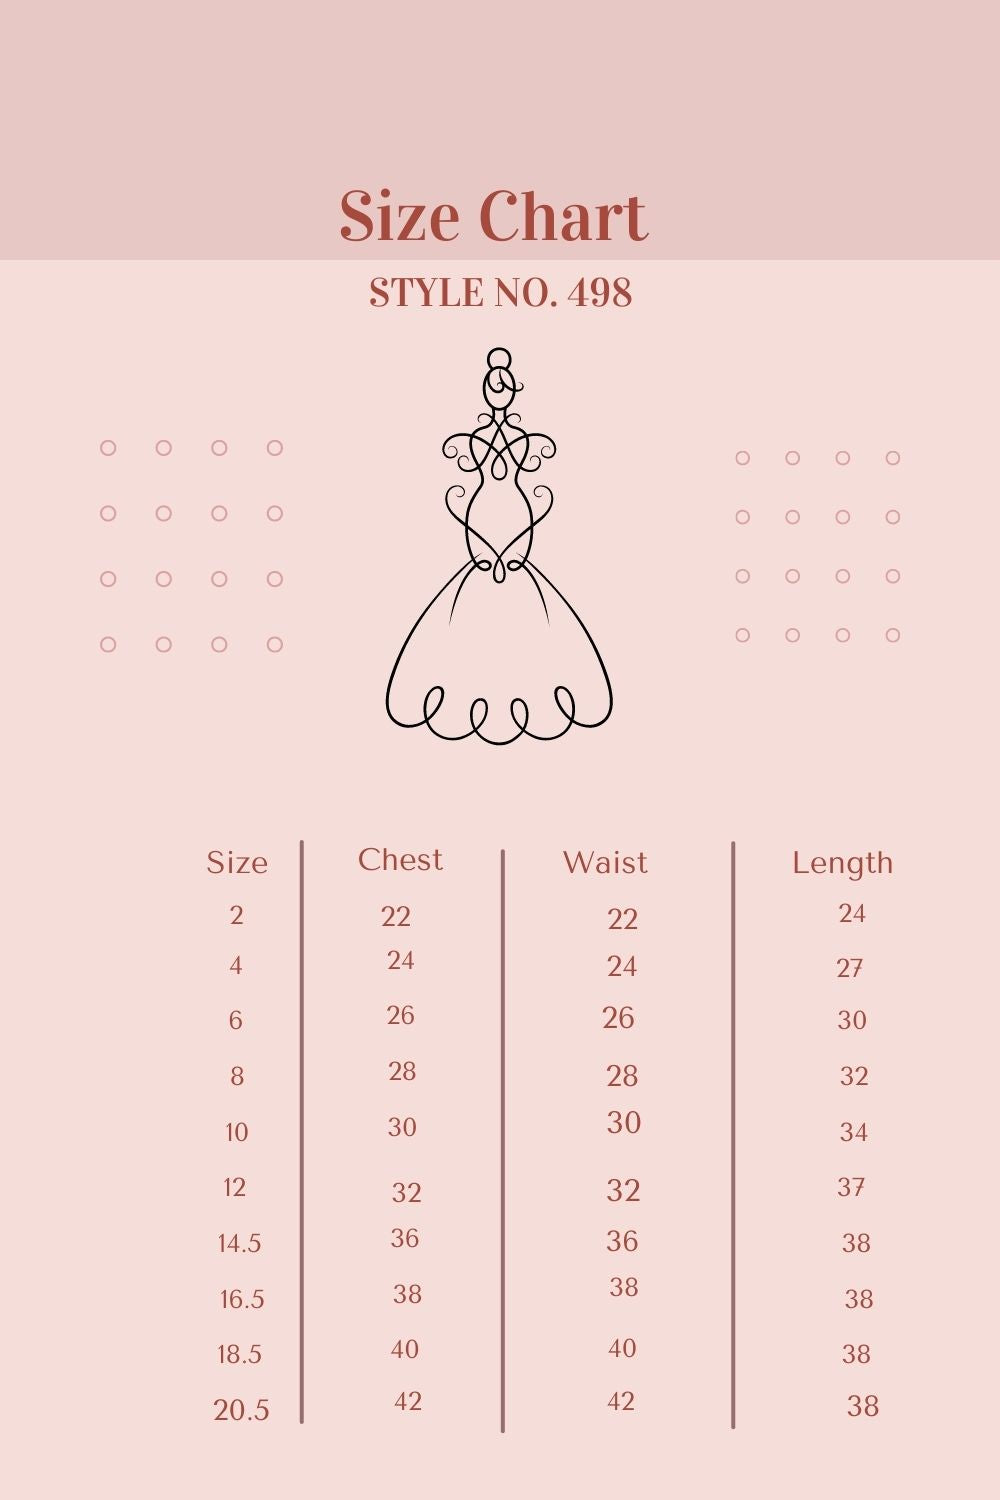 Pink Iridescent Sequin Back V Bow Dress